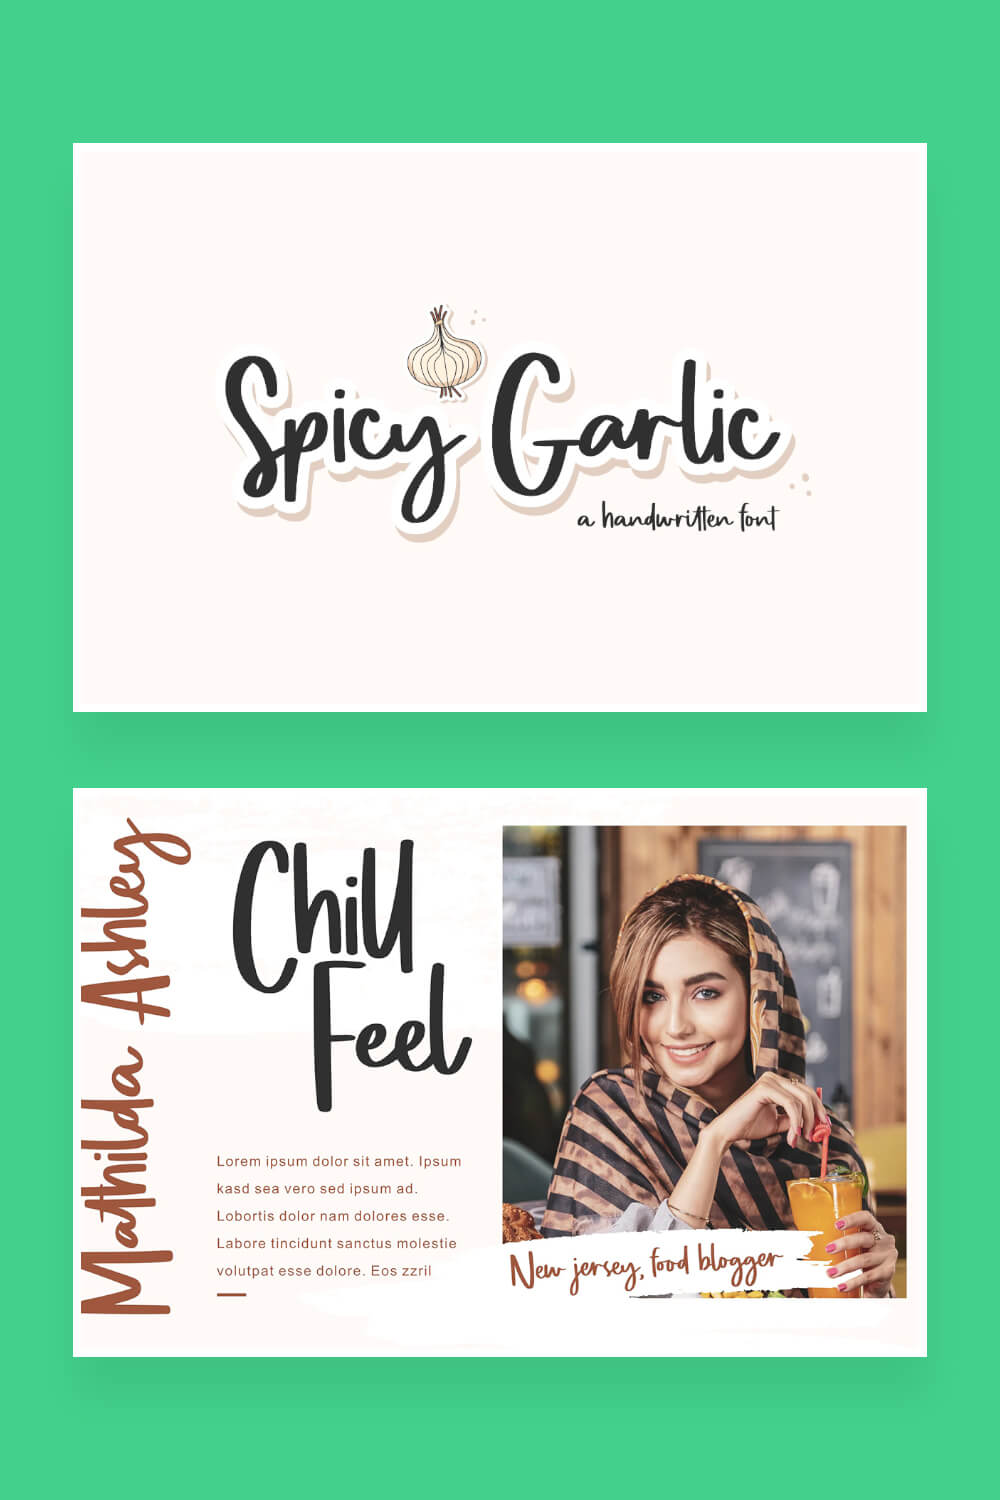 spicy garlic amazing handwritten font pinterest image.